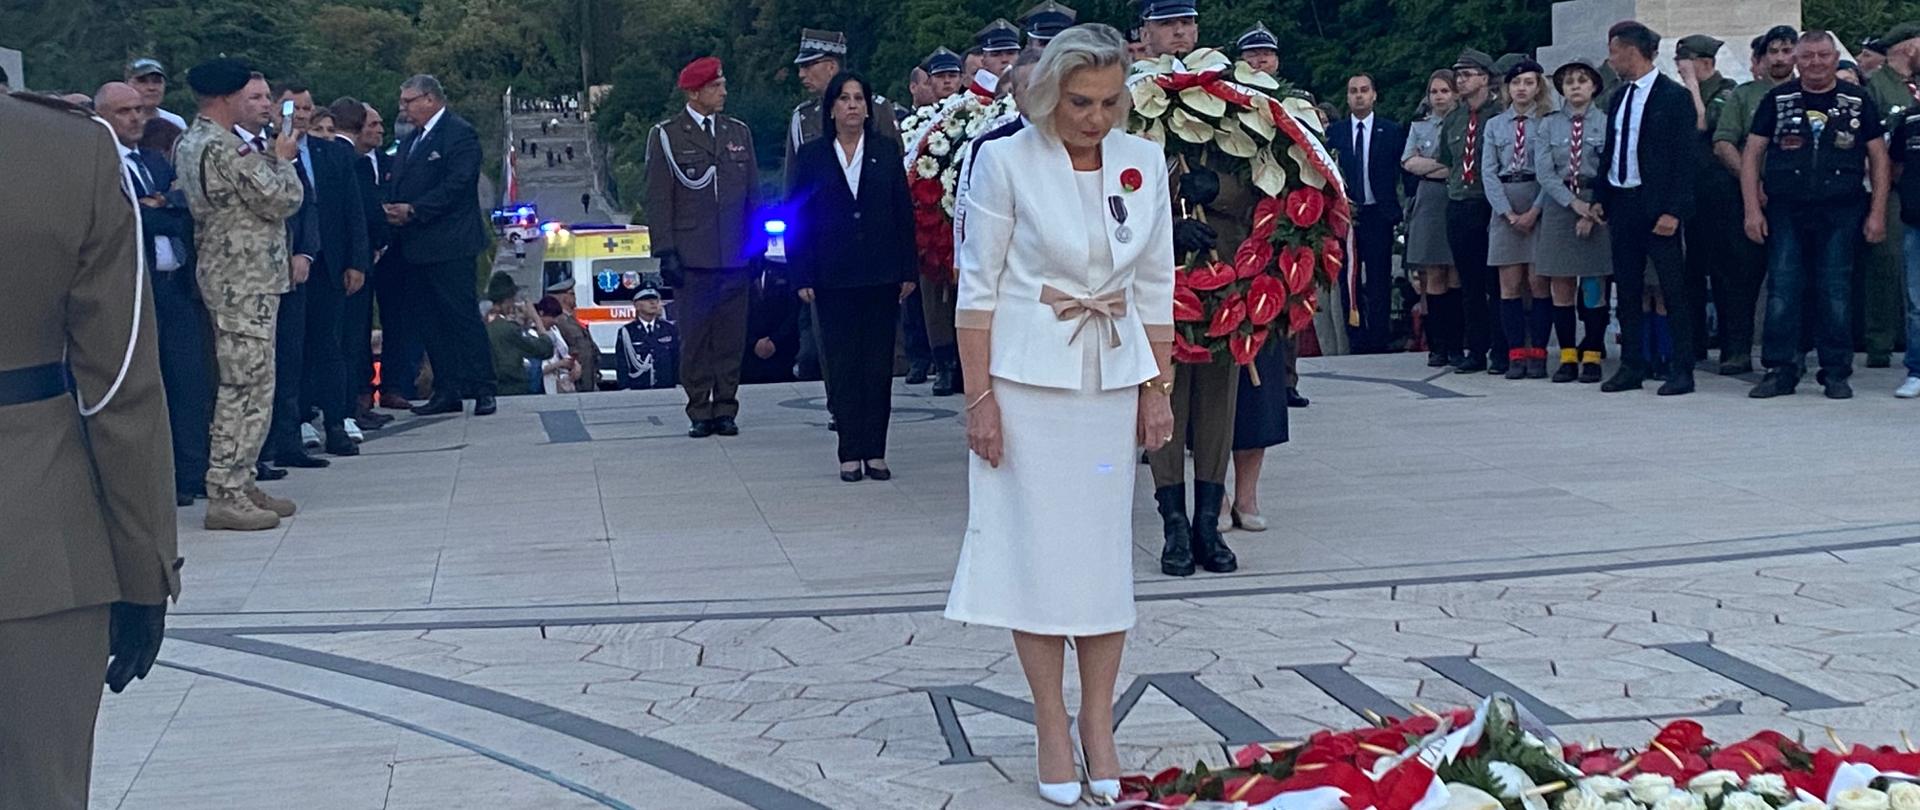 Uroczyste obchody 78. rocznicy bitwy pod Monte Cassino - Ambasador Anna Maria Anders składająca wieniec 